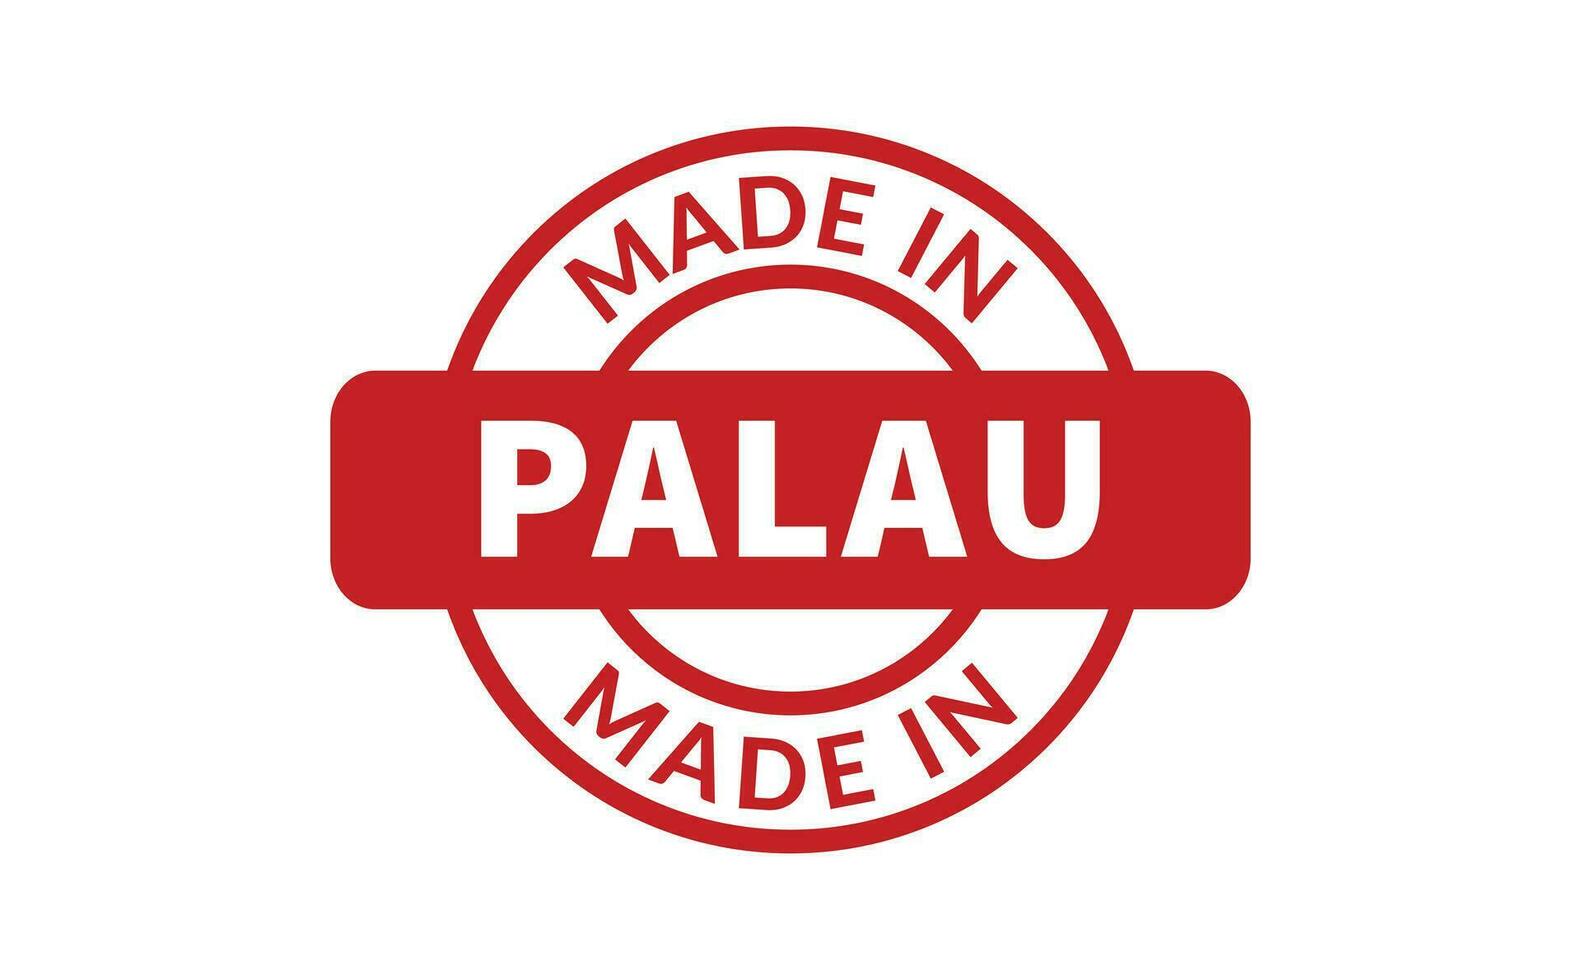 gemacht im Palau Gummi Briefmarke vektor